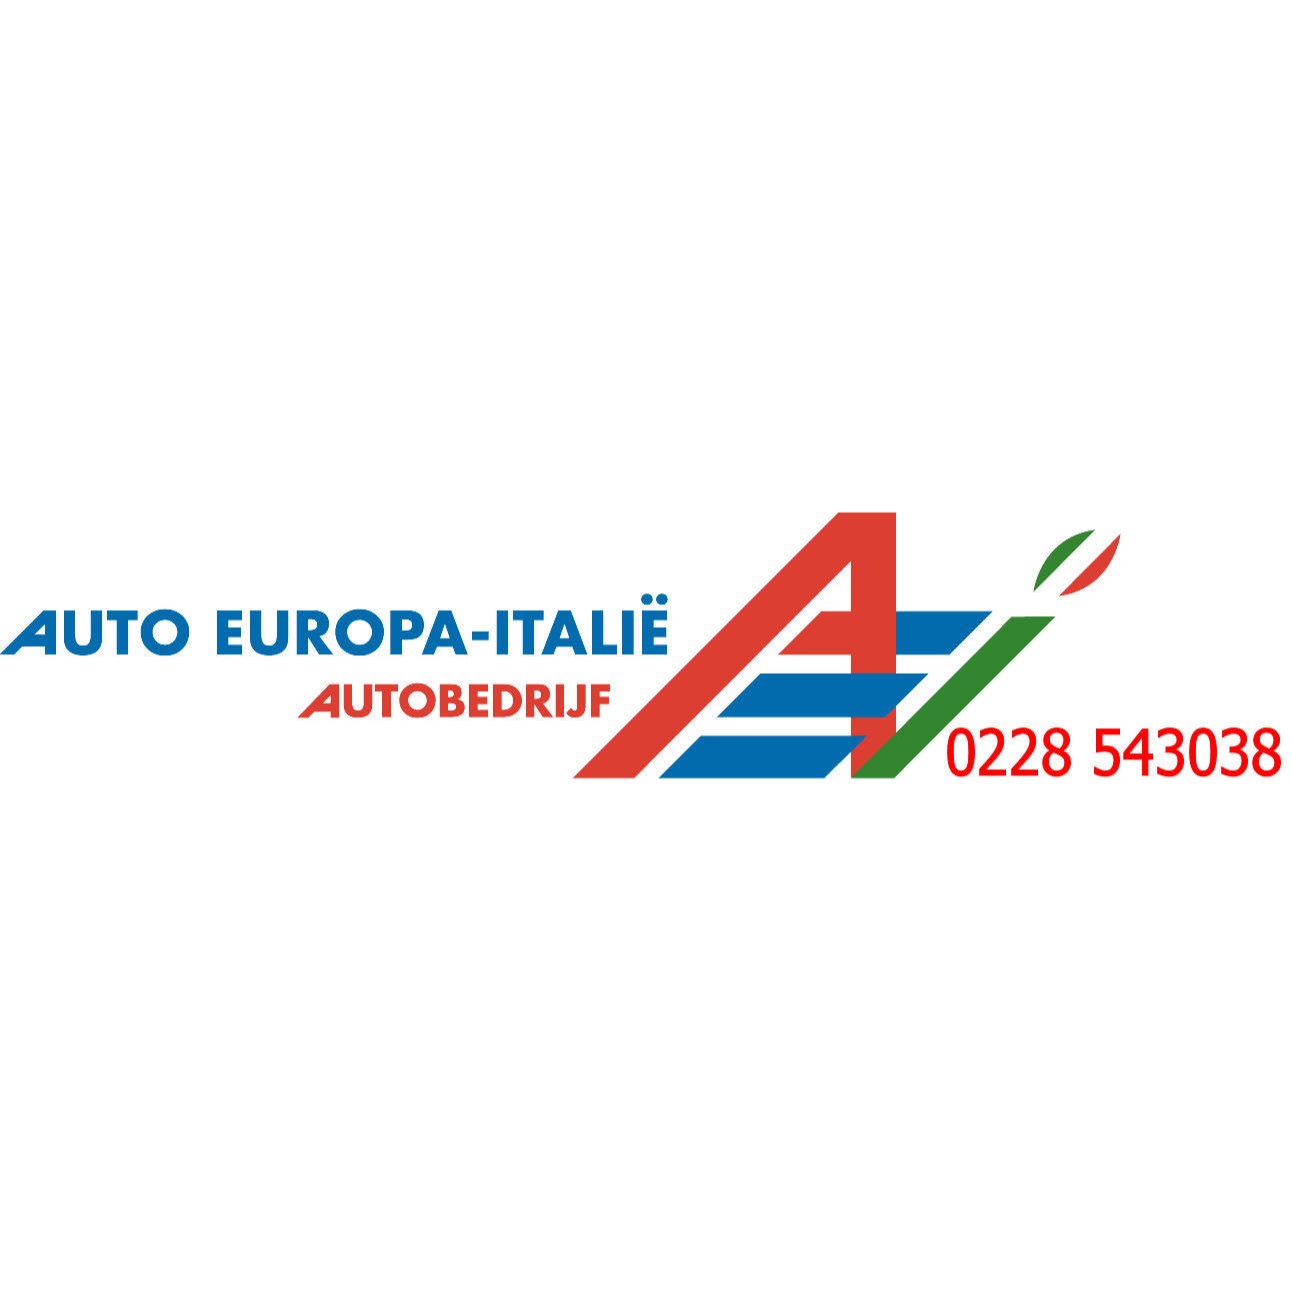 Auto Europa-Italie Logo